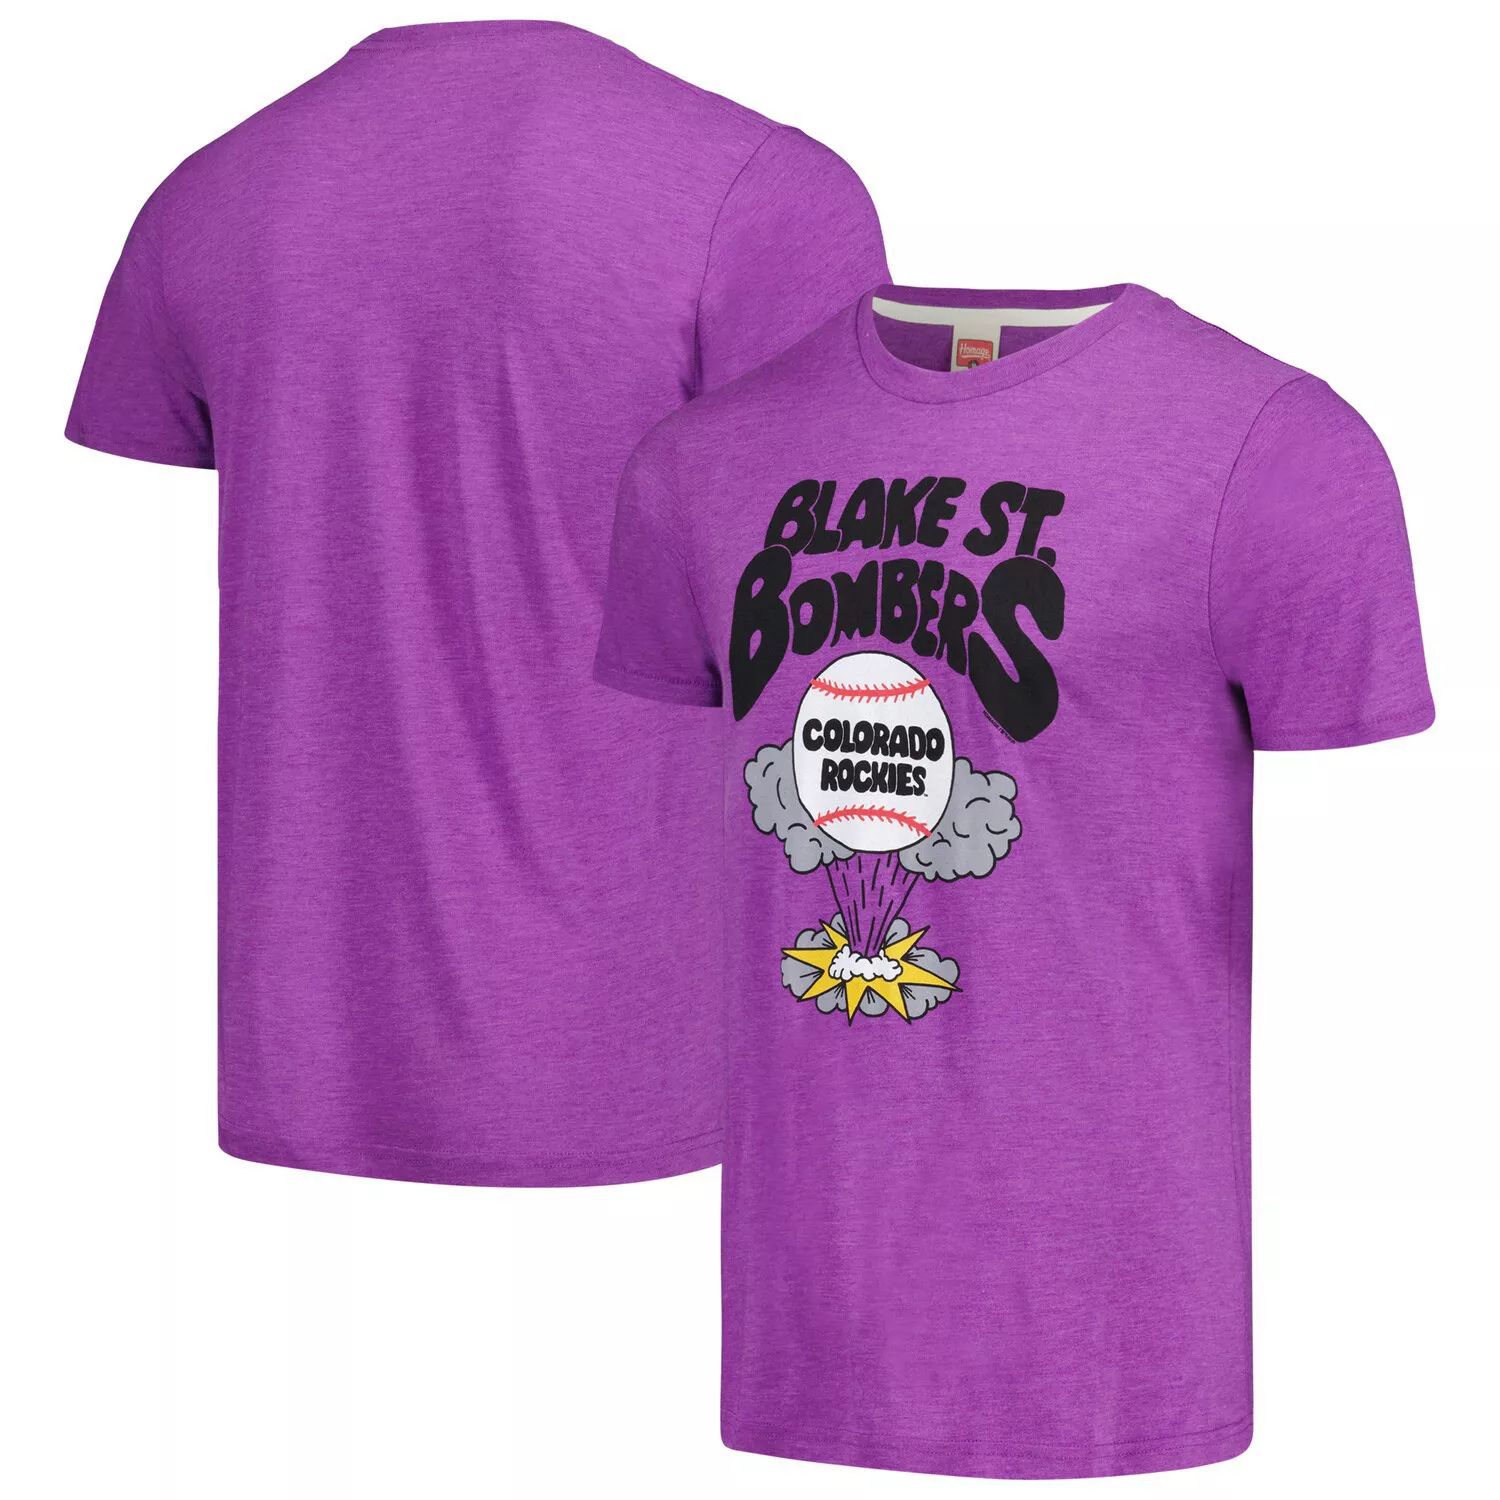 Мужская фиолетовая футболка Homage Colorado Rockies Blake St. Bombers Tri-Blend мужская футболка heather black colorado rockies home spin tri blend nike